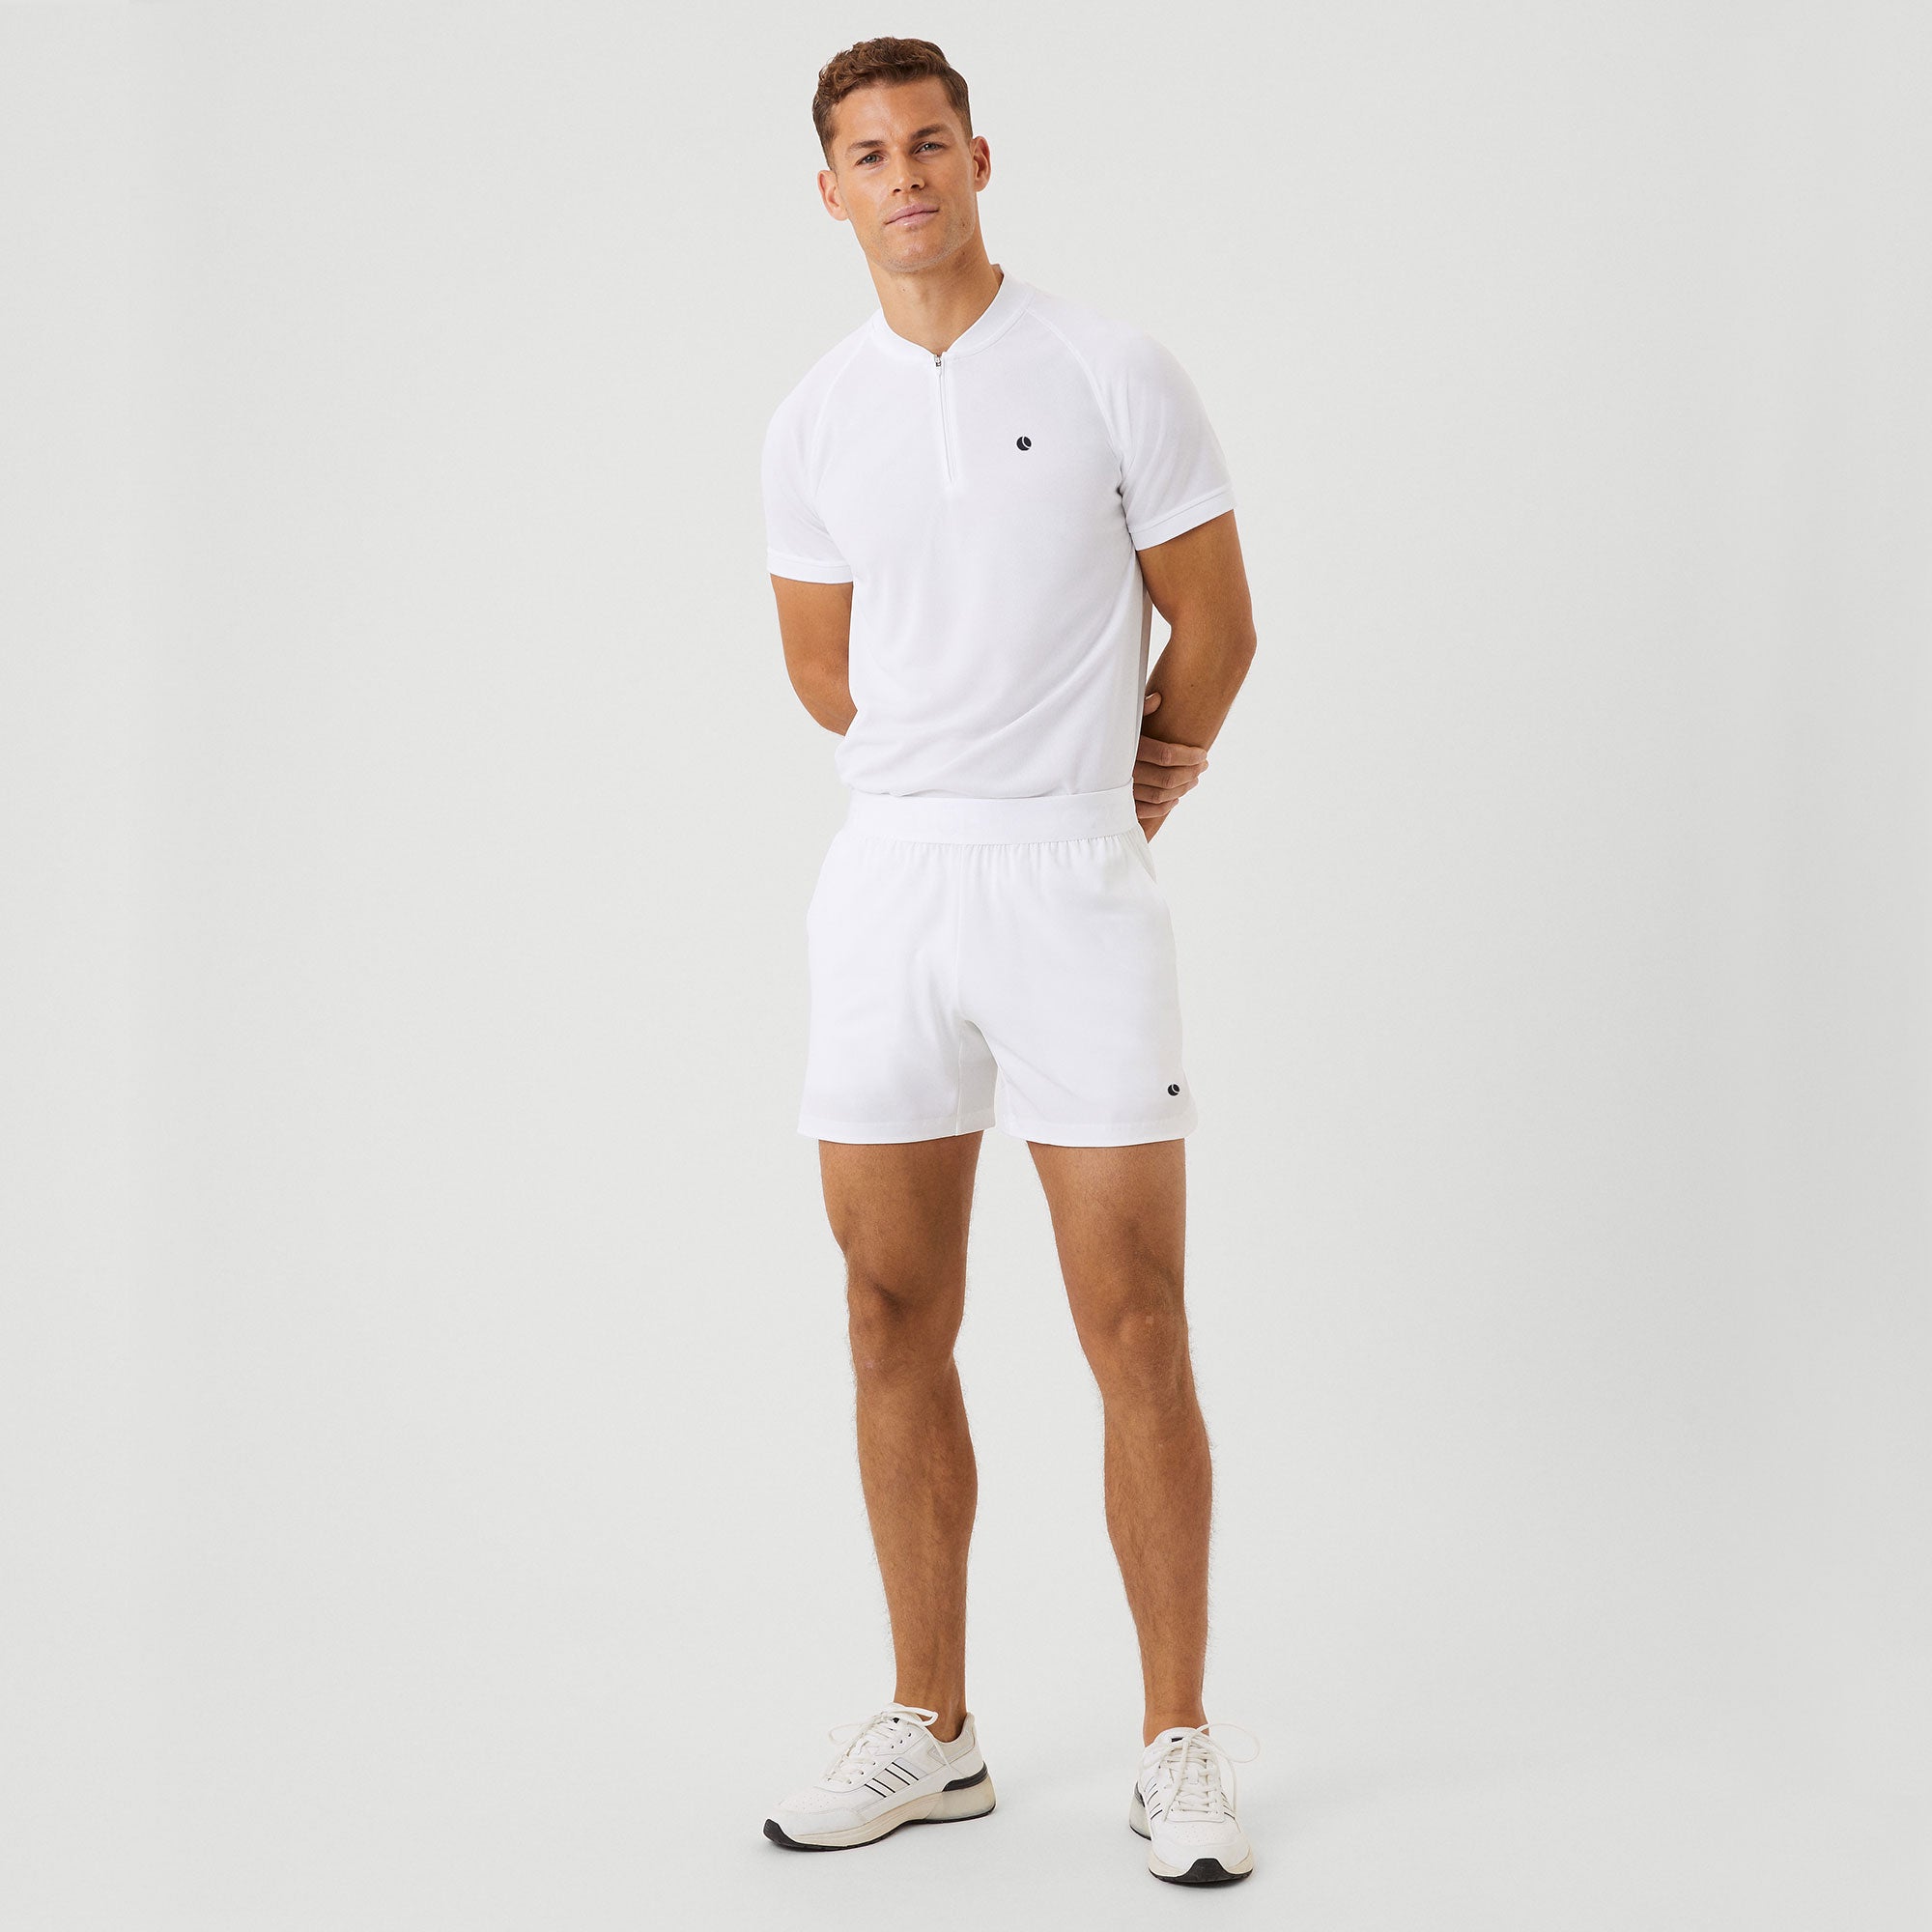 Björn Borg Ace Men's Short Tennis Shorts - White (3)